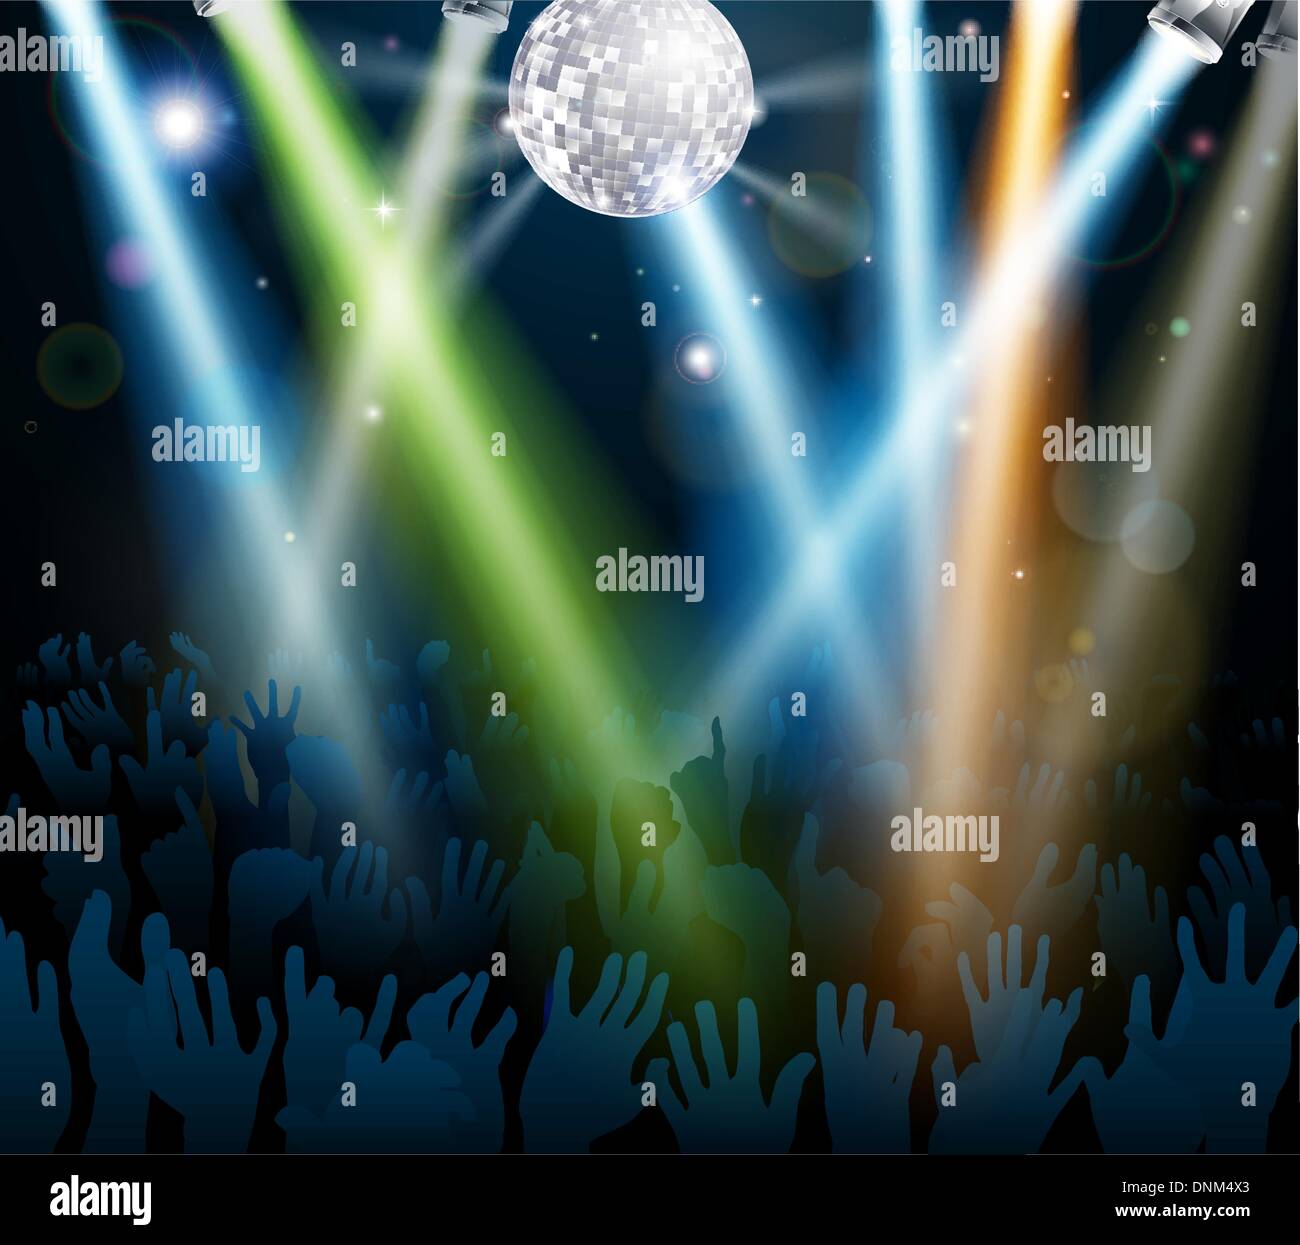 Folla danze ad un concerto o in una discoteca discoteca dance floor con le mani fino al di sotto di una sfera a specchio con luci Illustrazione Vettoriale